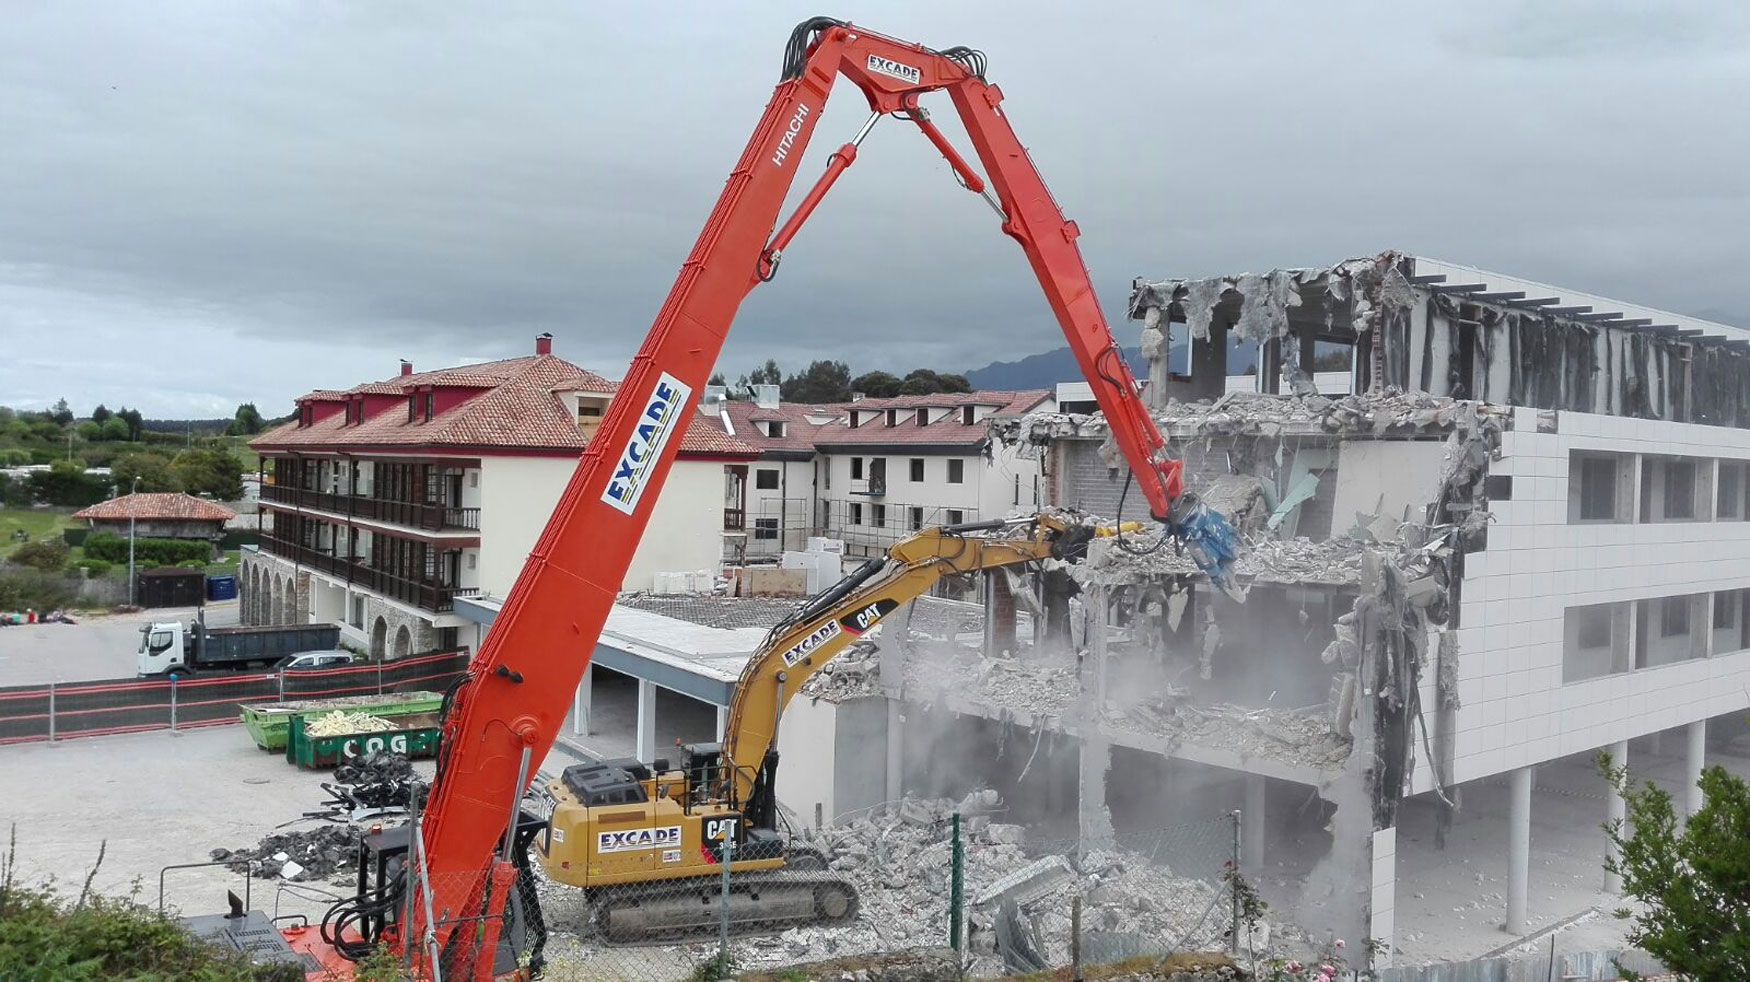 Demolicin de la ampliacin del Hotel Kaype en la playa de Barro, realizada con la cizalla universal CU022 adquirida por Excade...